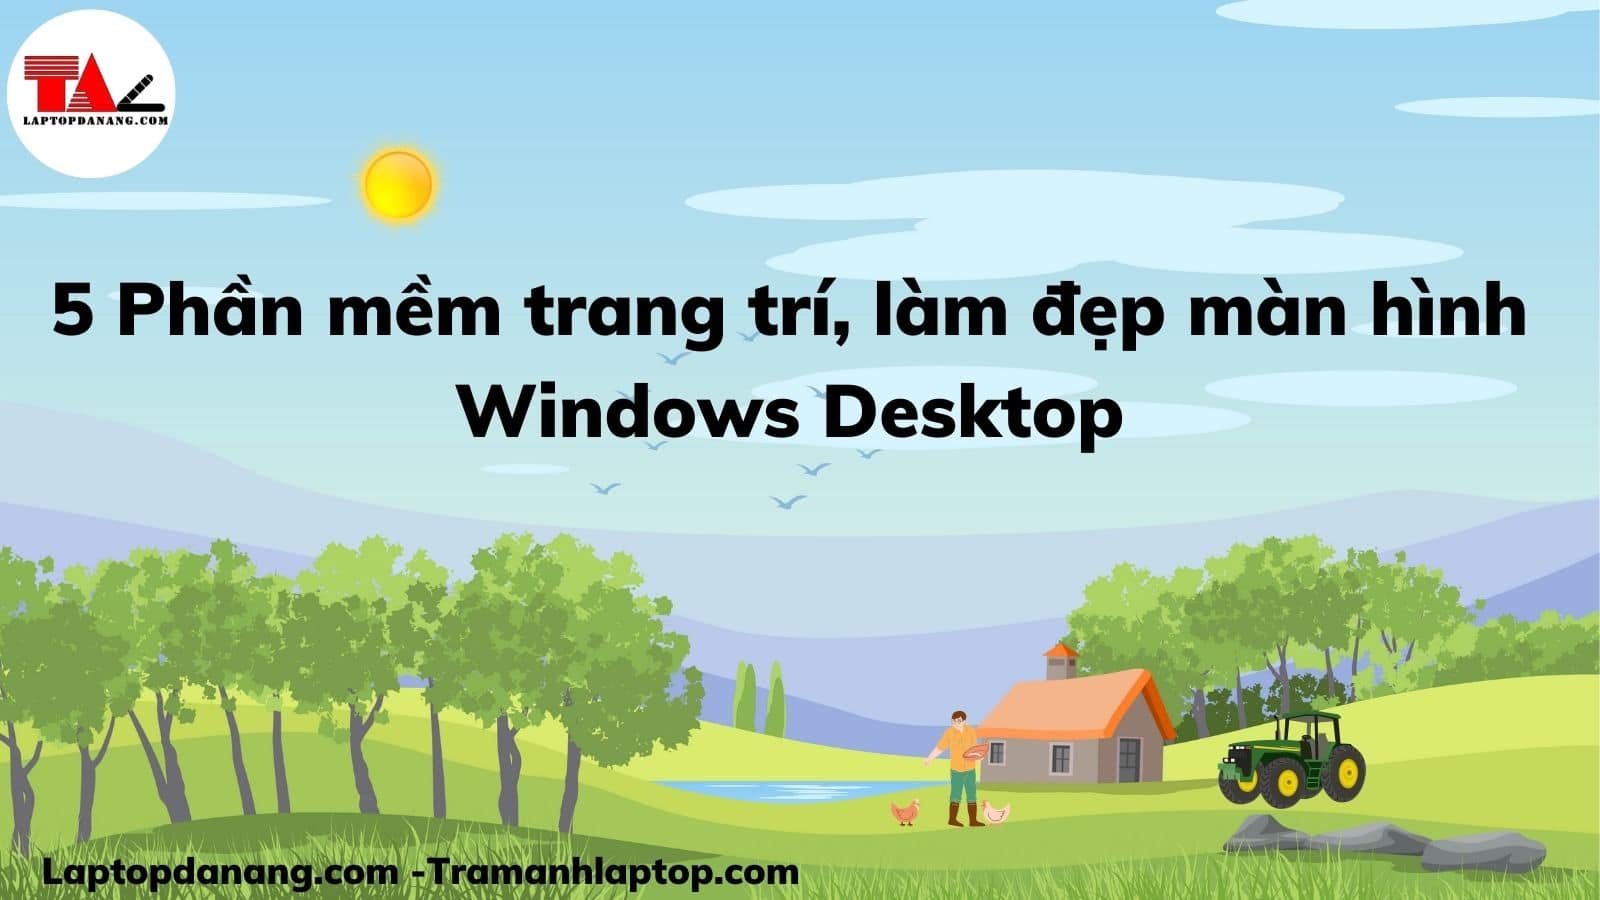 5 Phần mềm trang trí, làm đẹp màn hình Windows Desktop -